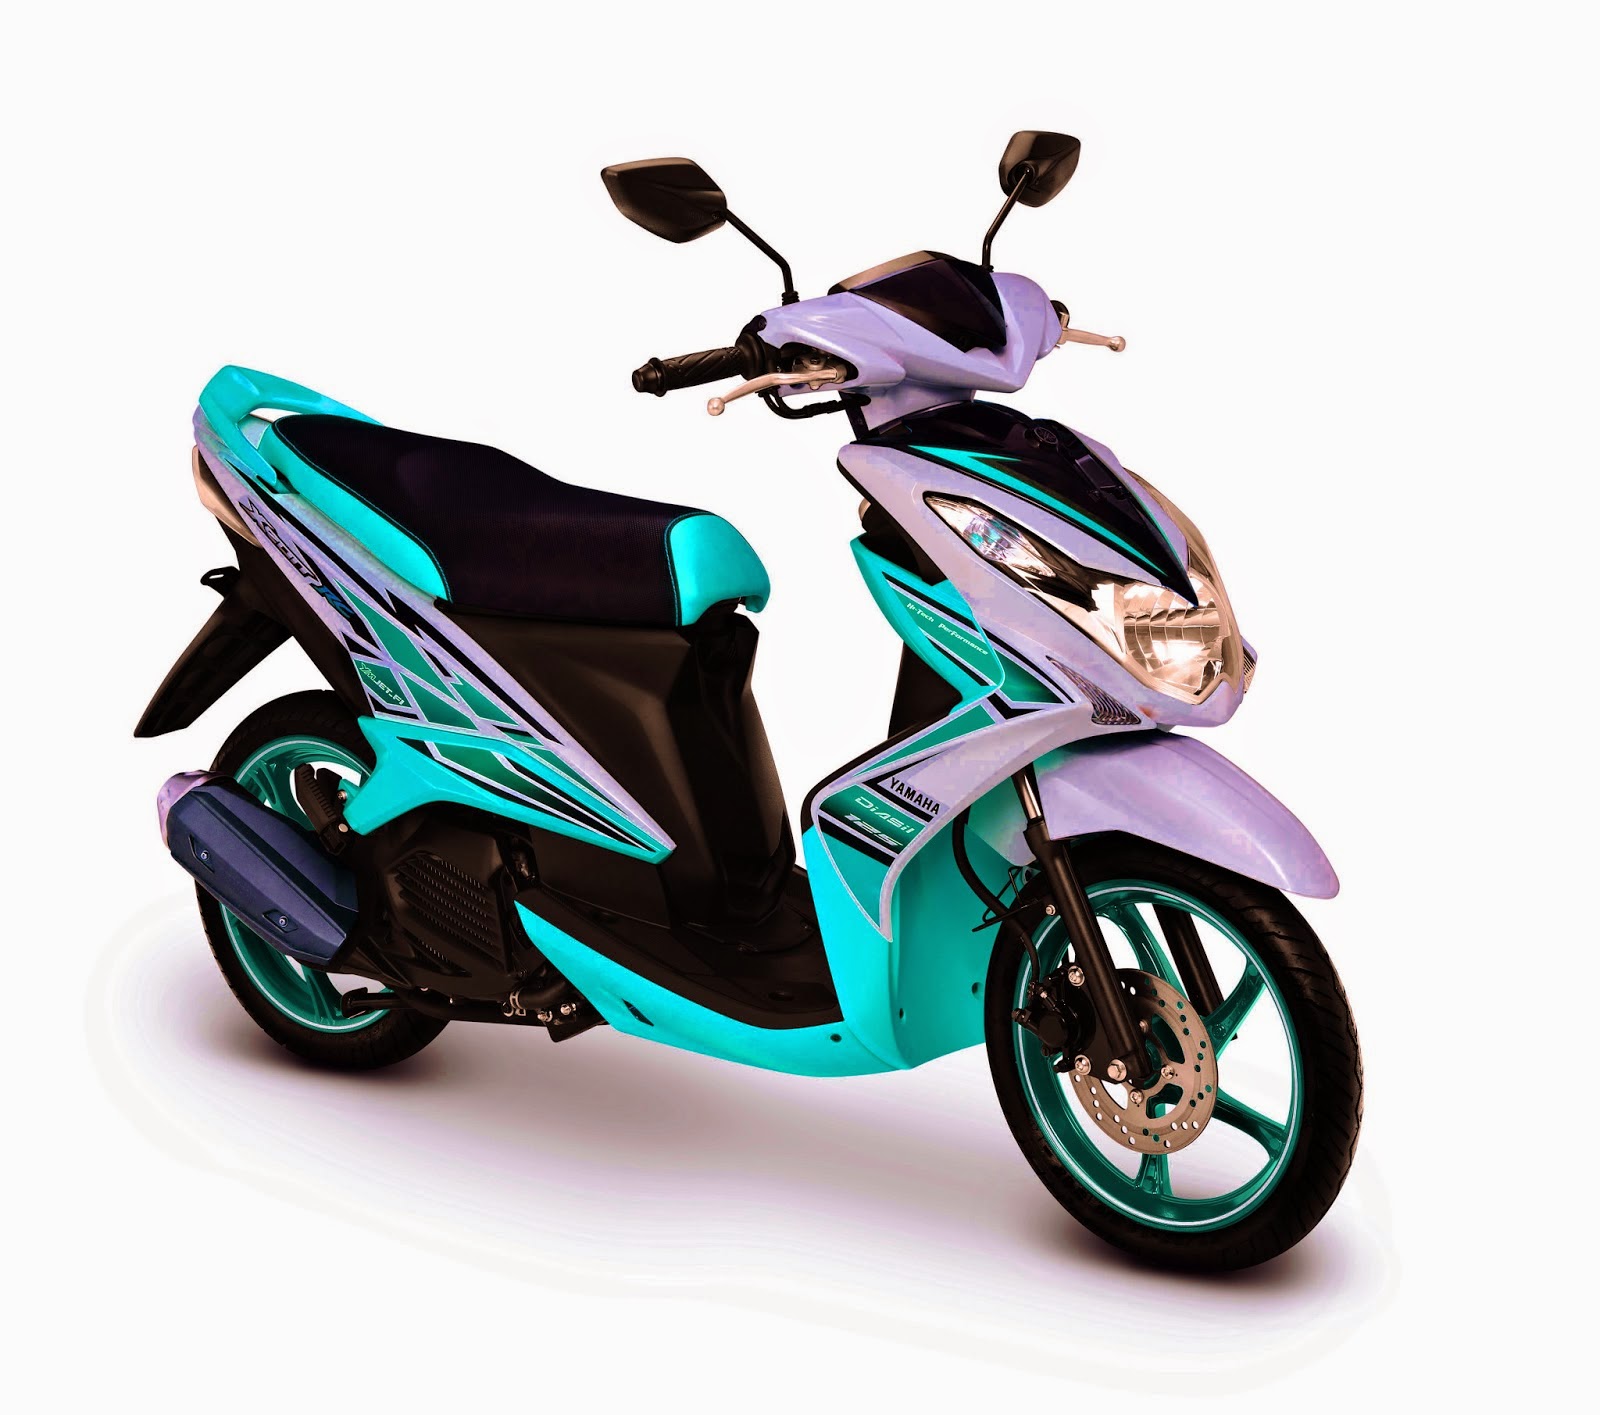 Foto Motor Matic Yamaha 2014 Terbaru Foto Gambar Terbaru 